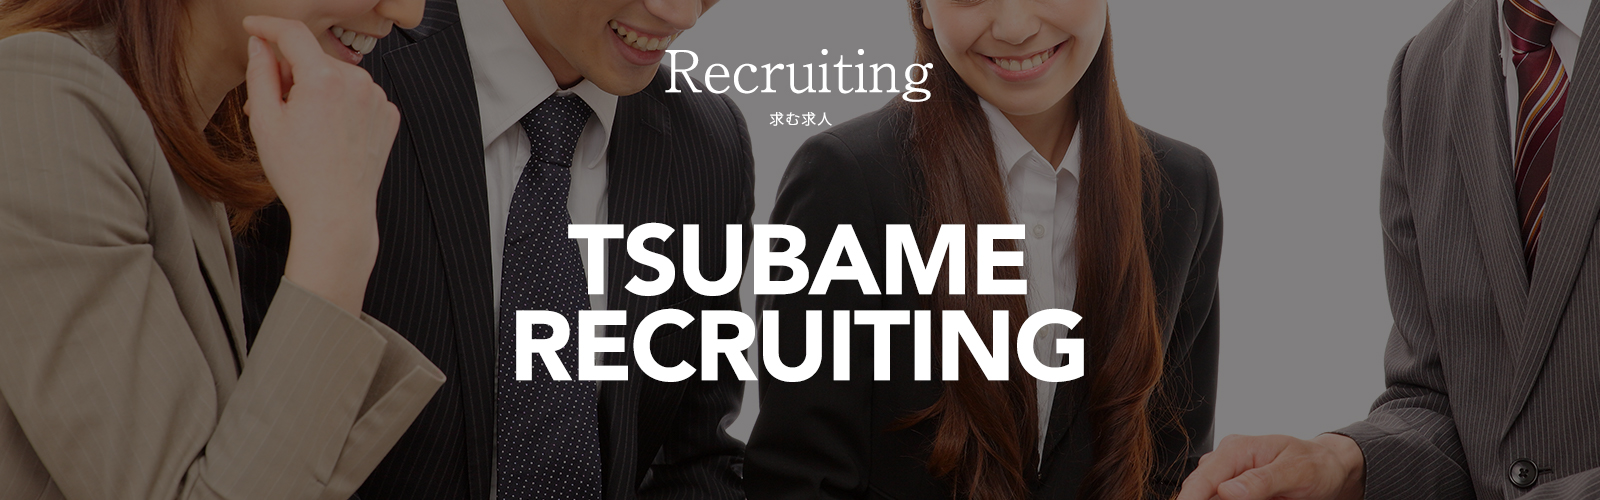 Recruiting TSUBAME RECRUITING